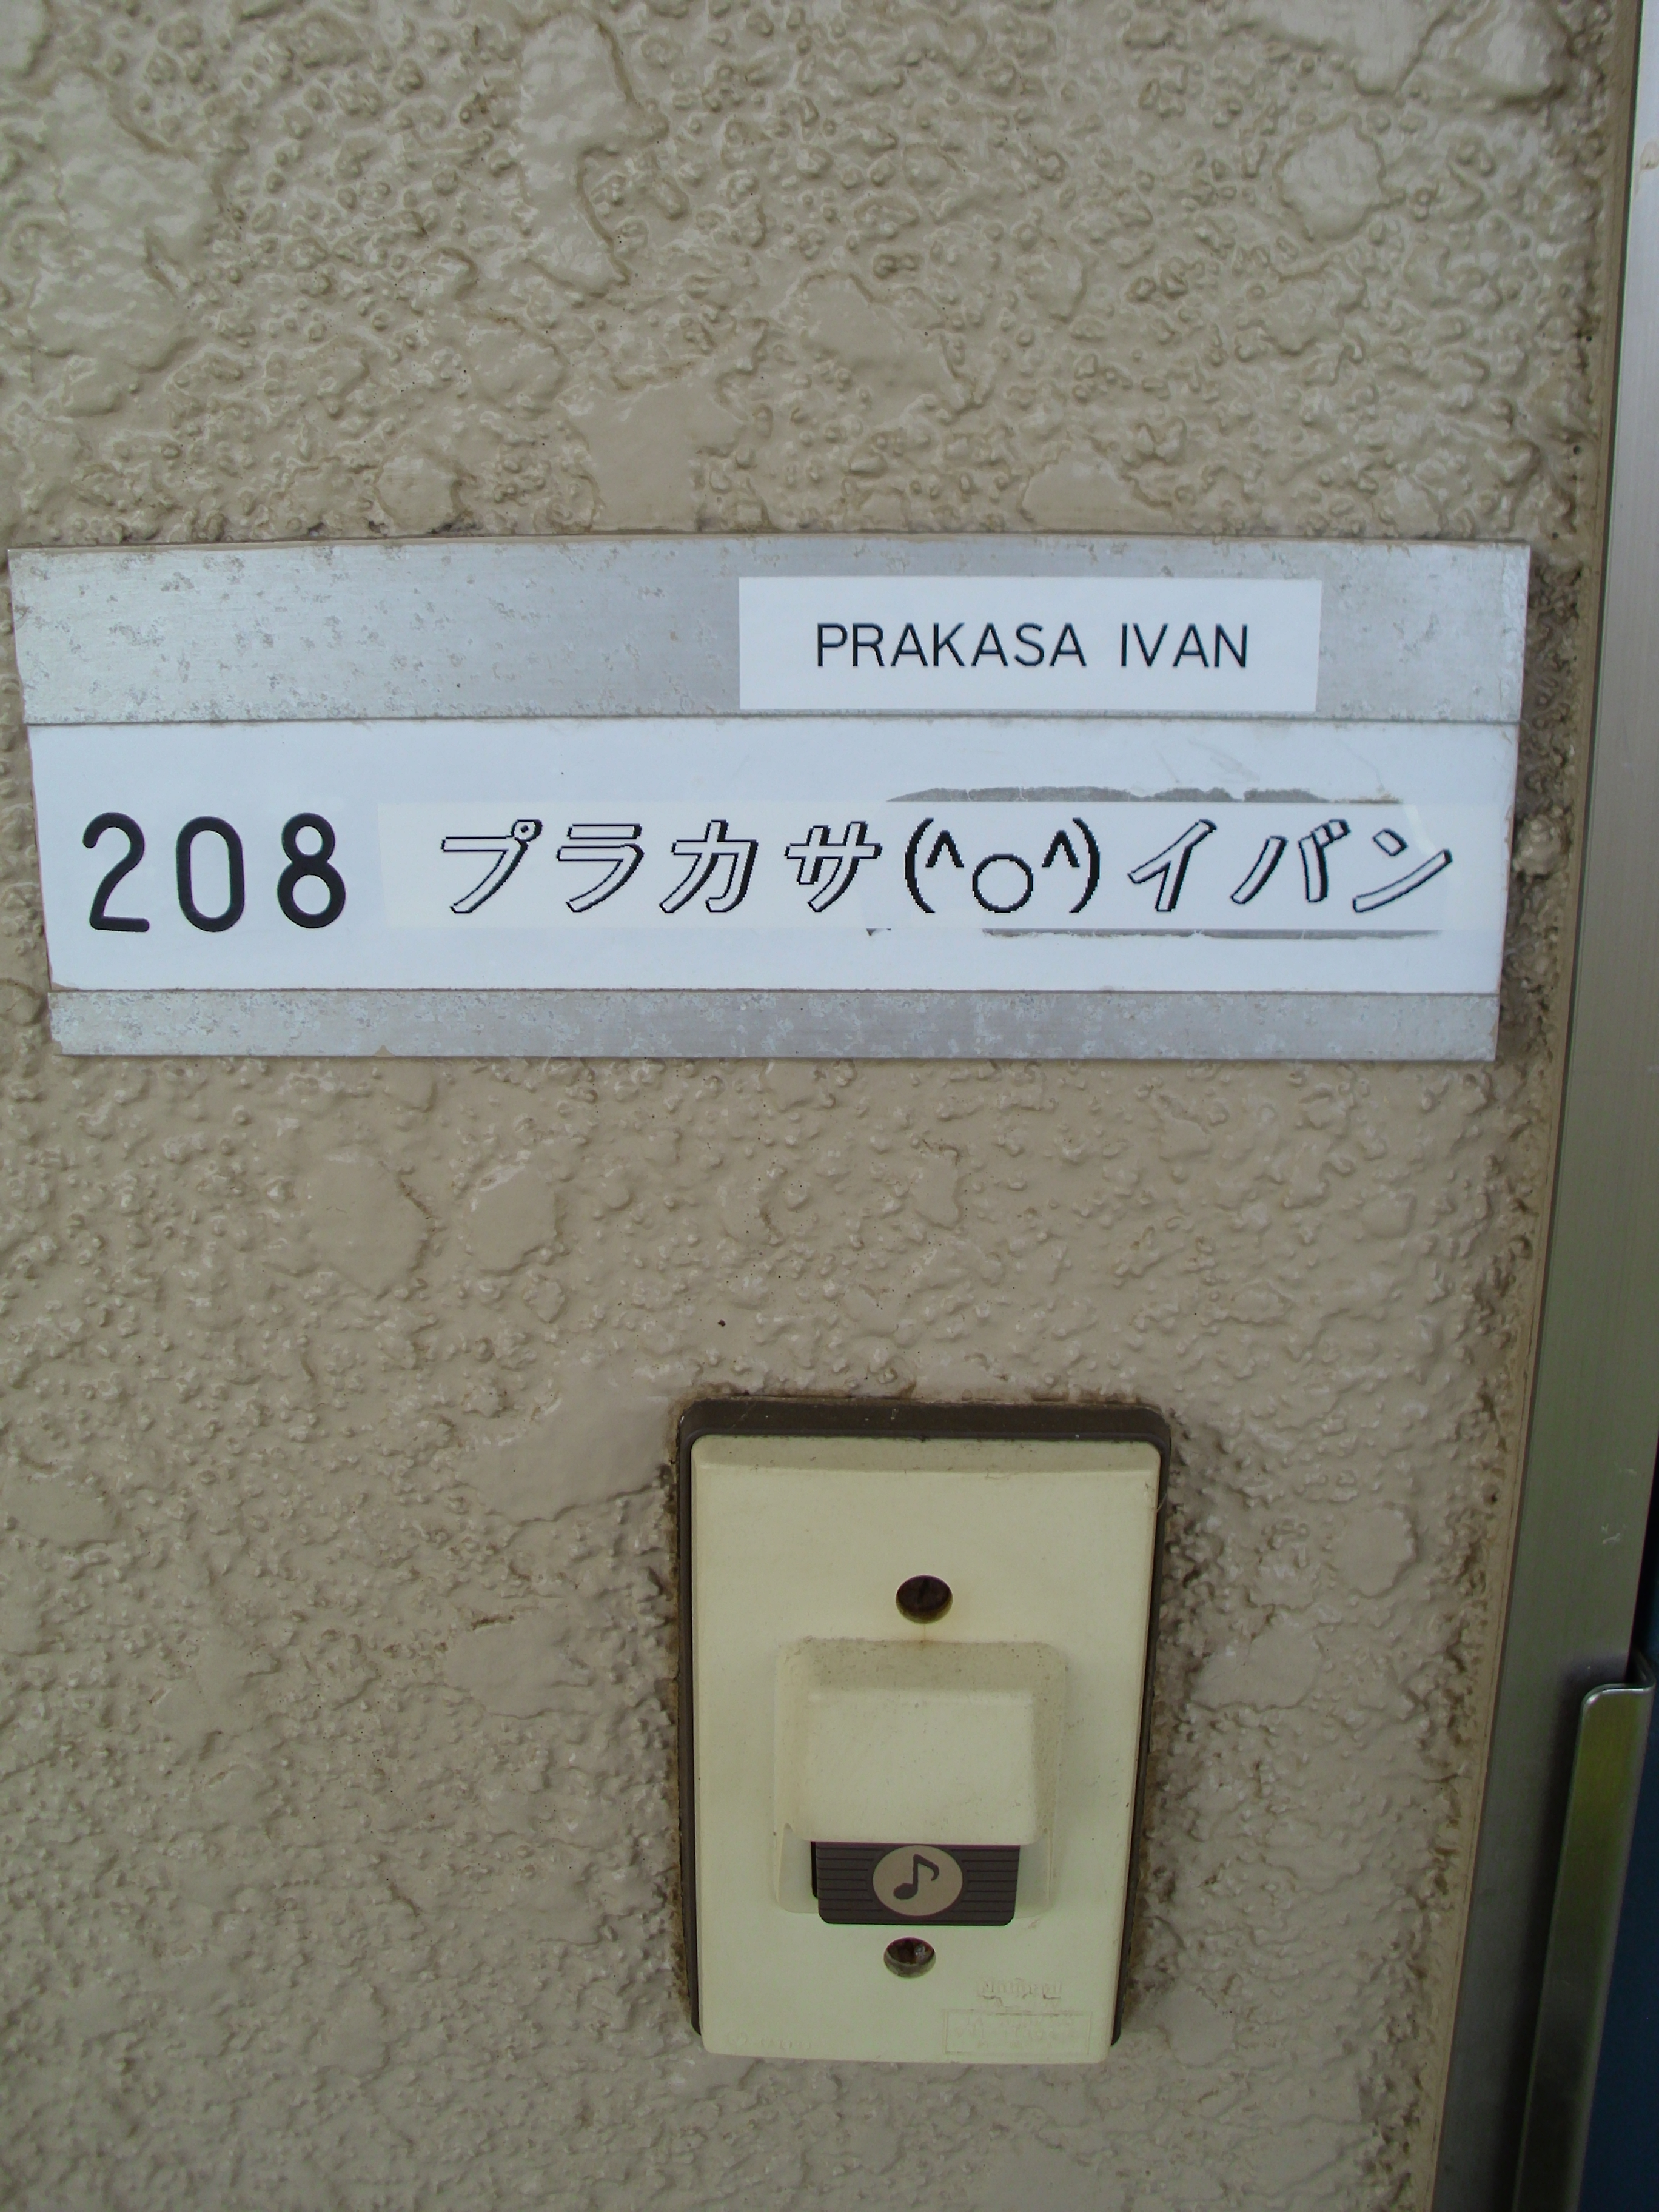 Apartemen Di Jepang Ivanprakasa Com